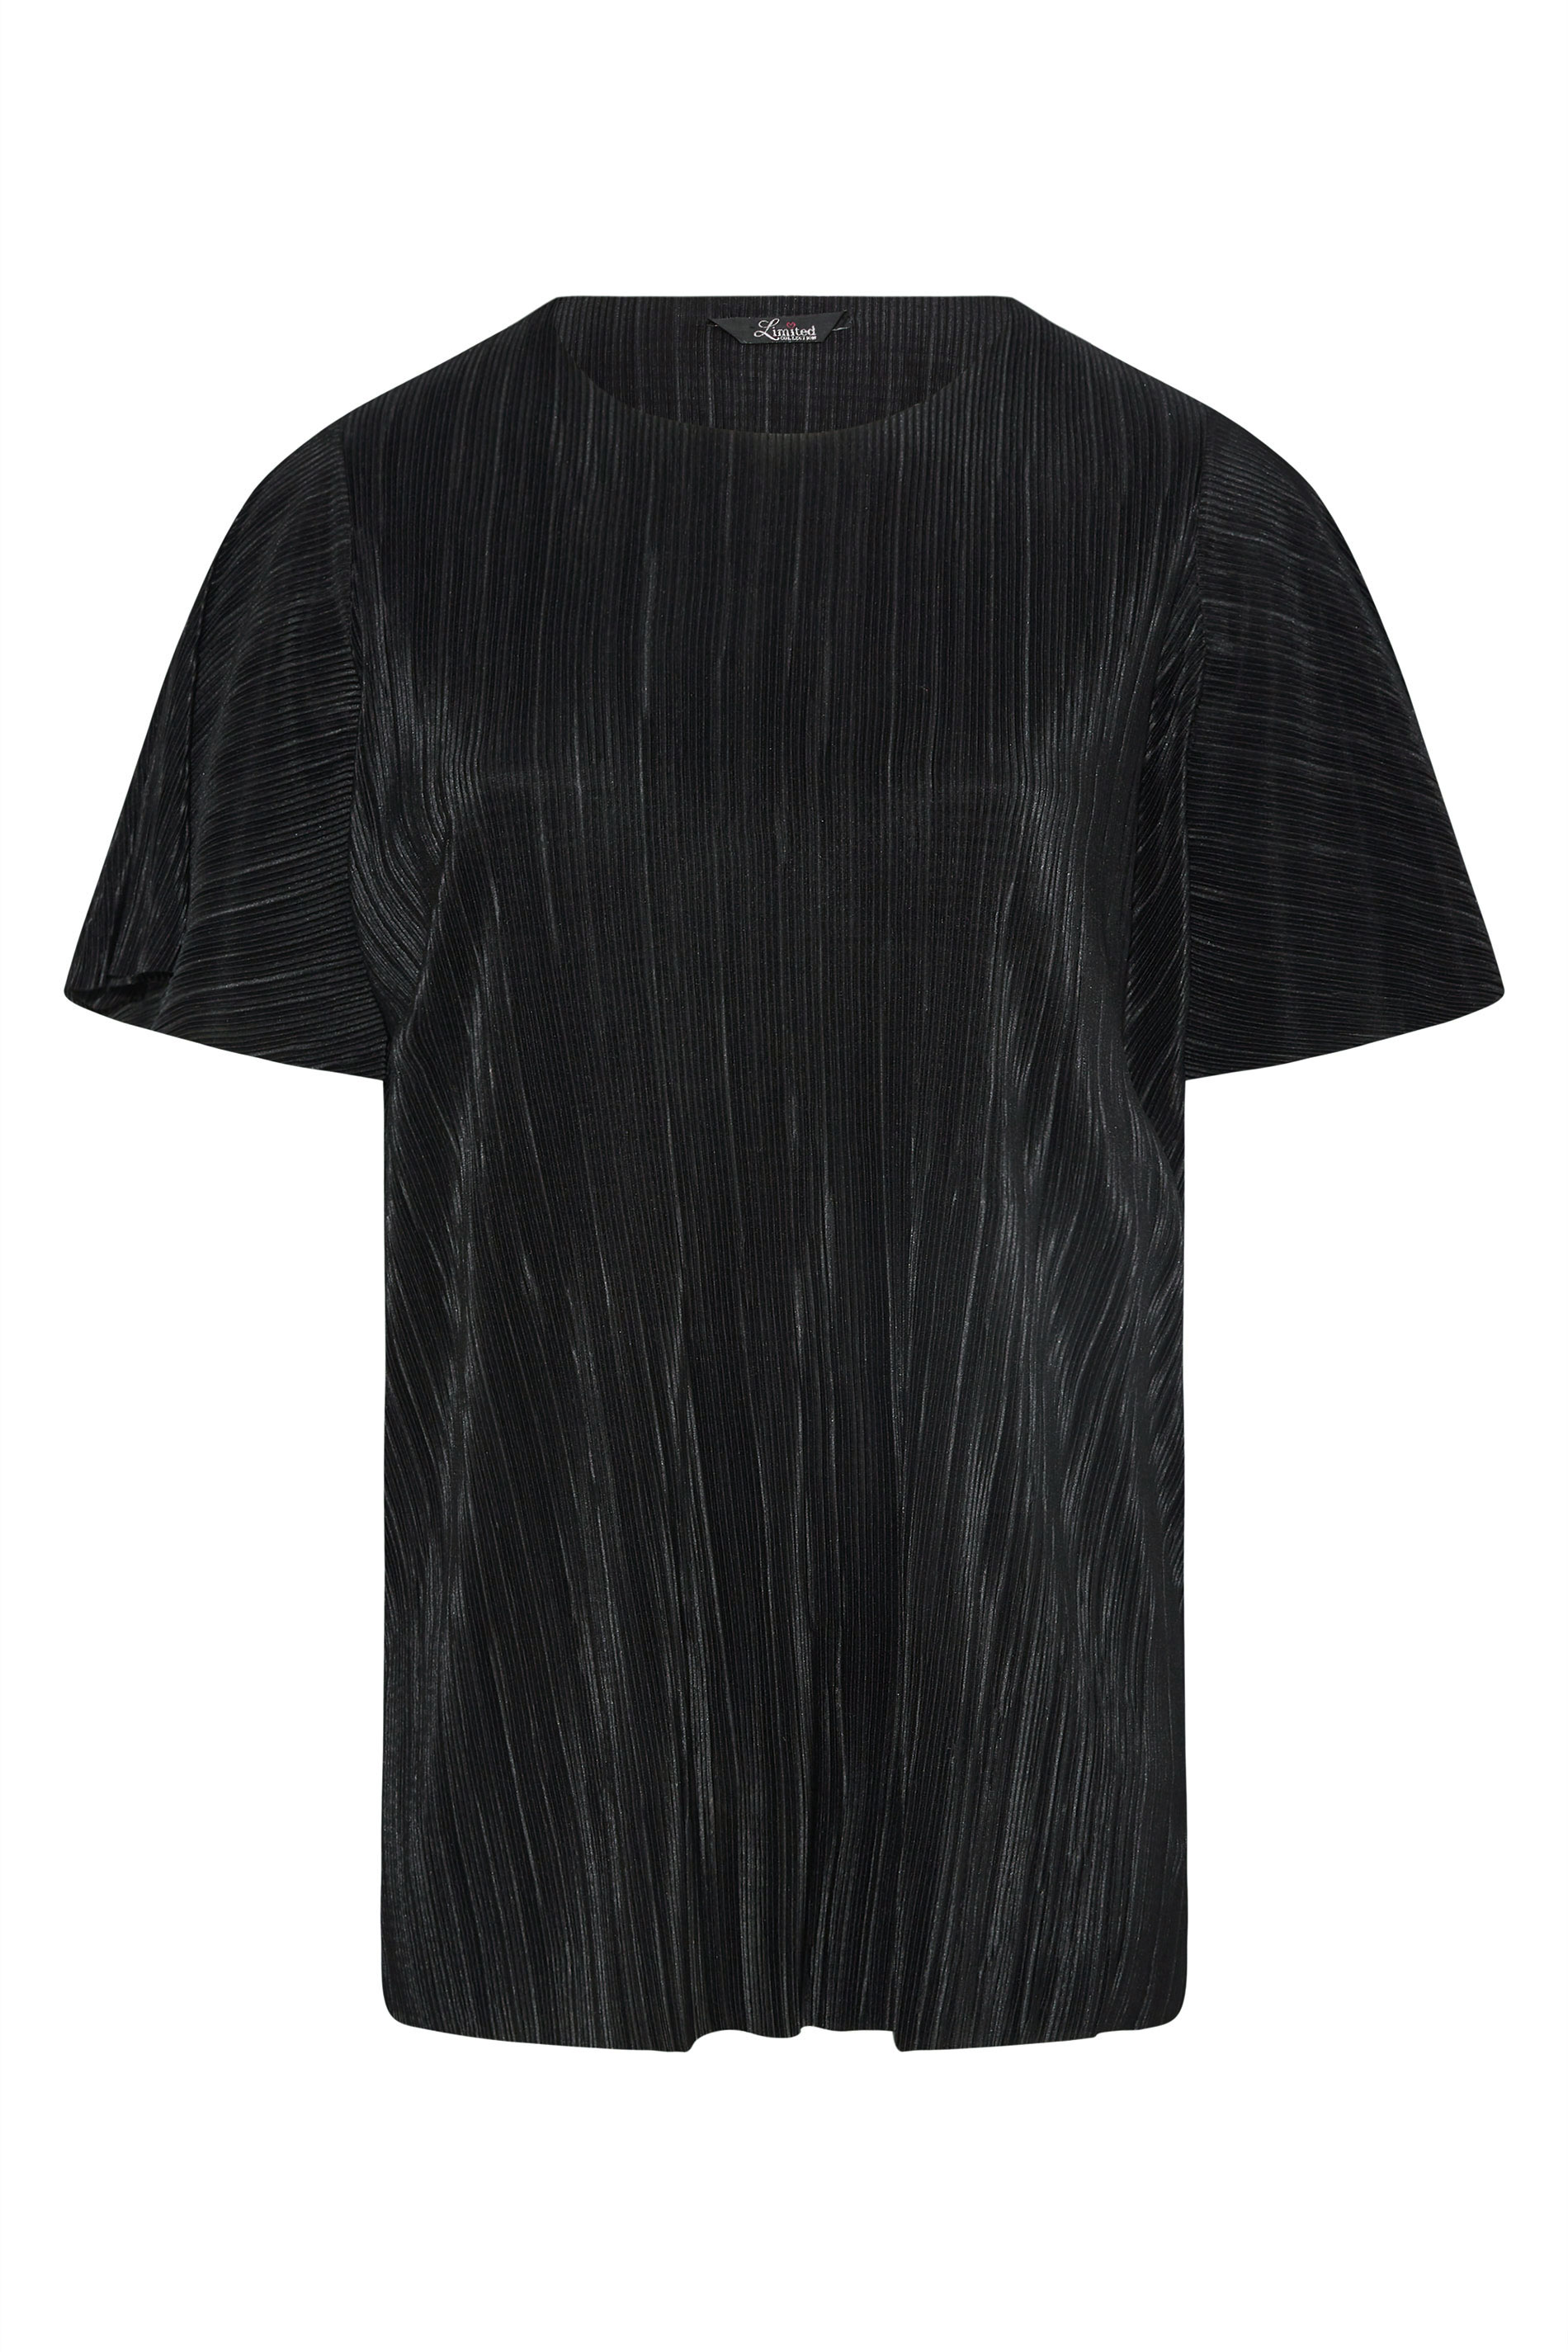 Grande taille  Tops Grande taille  Tops de Soirée | LIMITED COLLECTION - T-Shirt Noir Ample Texture Plissée - KK29064